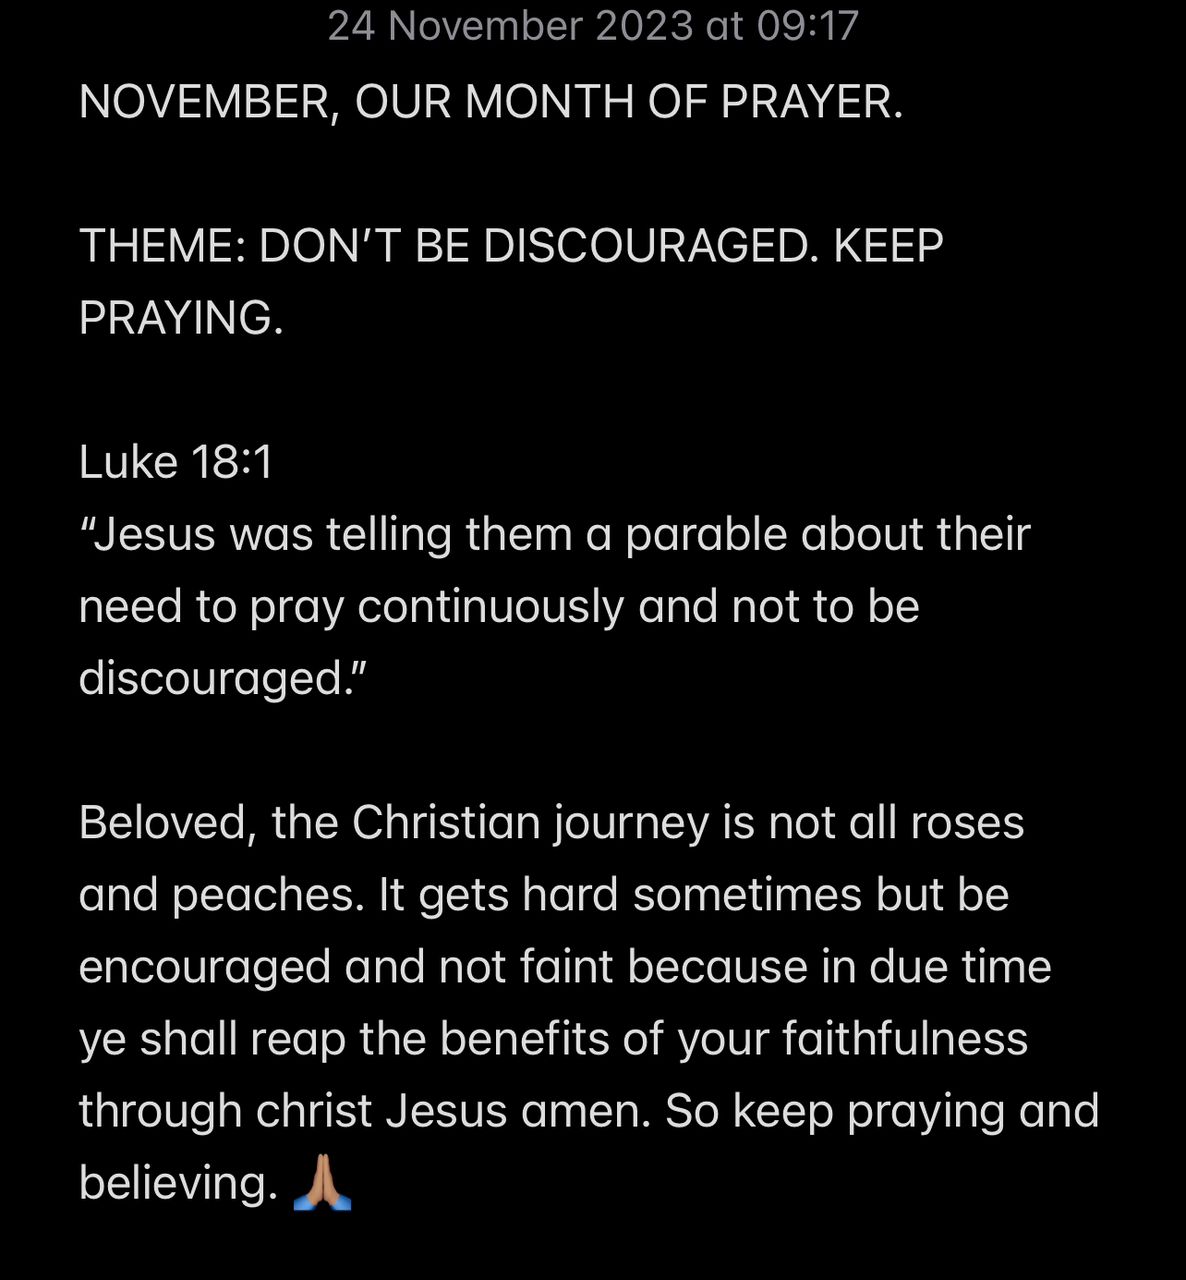 DON’T BE DISCOURAGED. KEEP PRAYING.